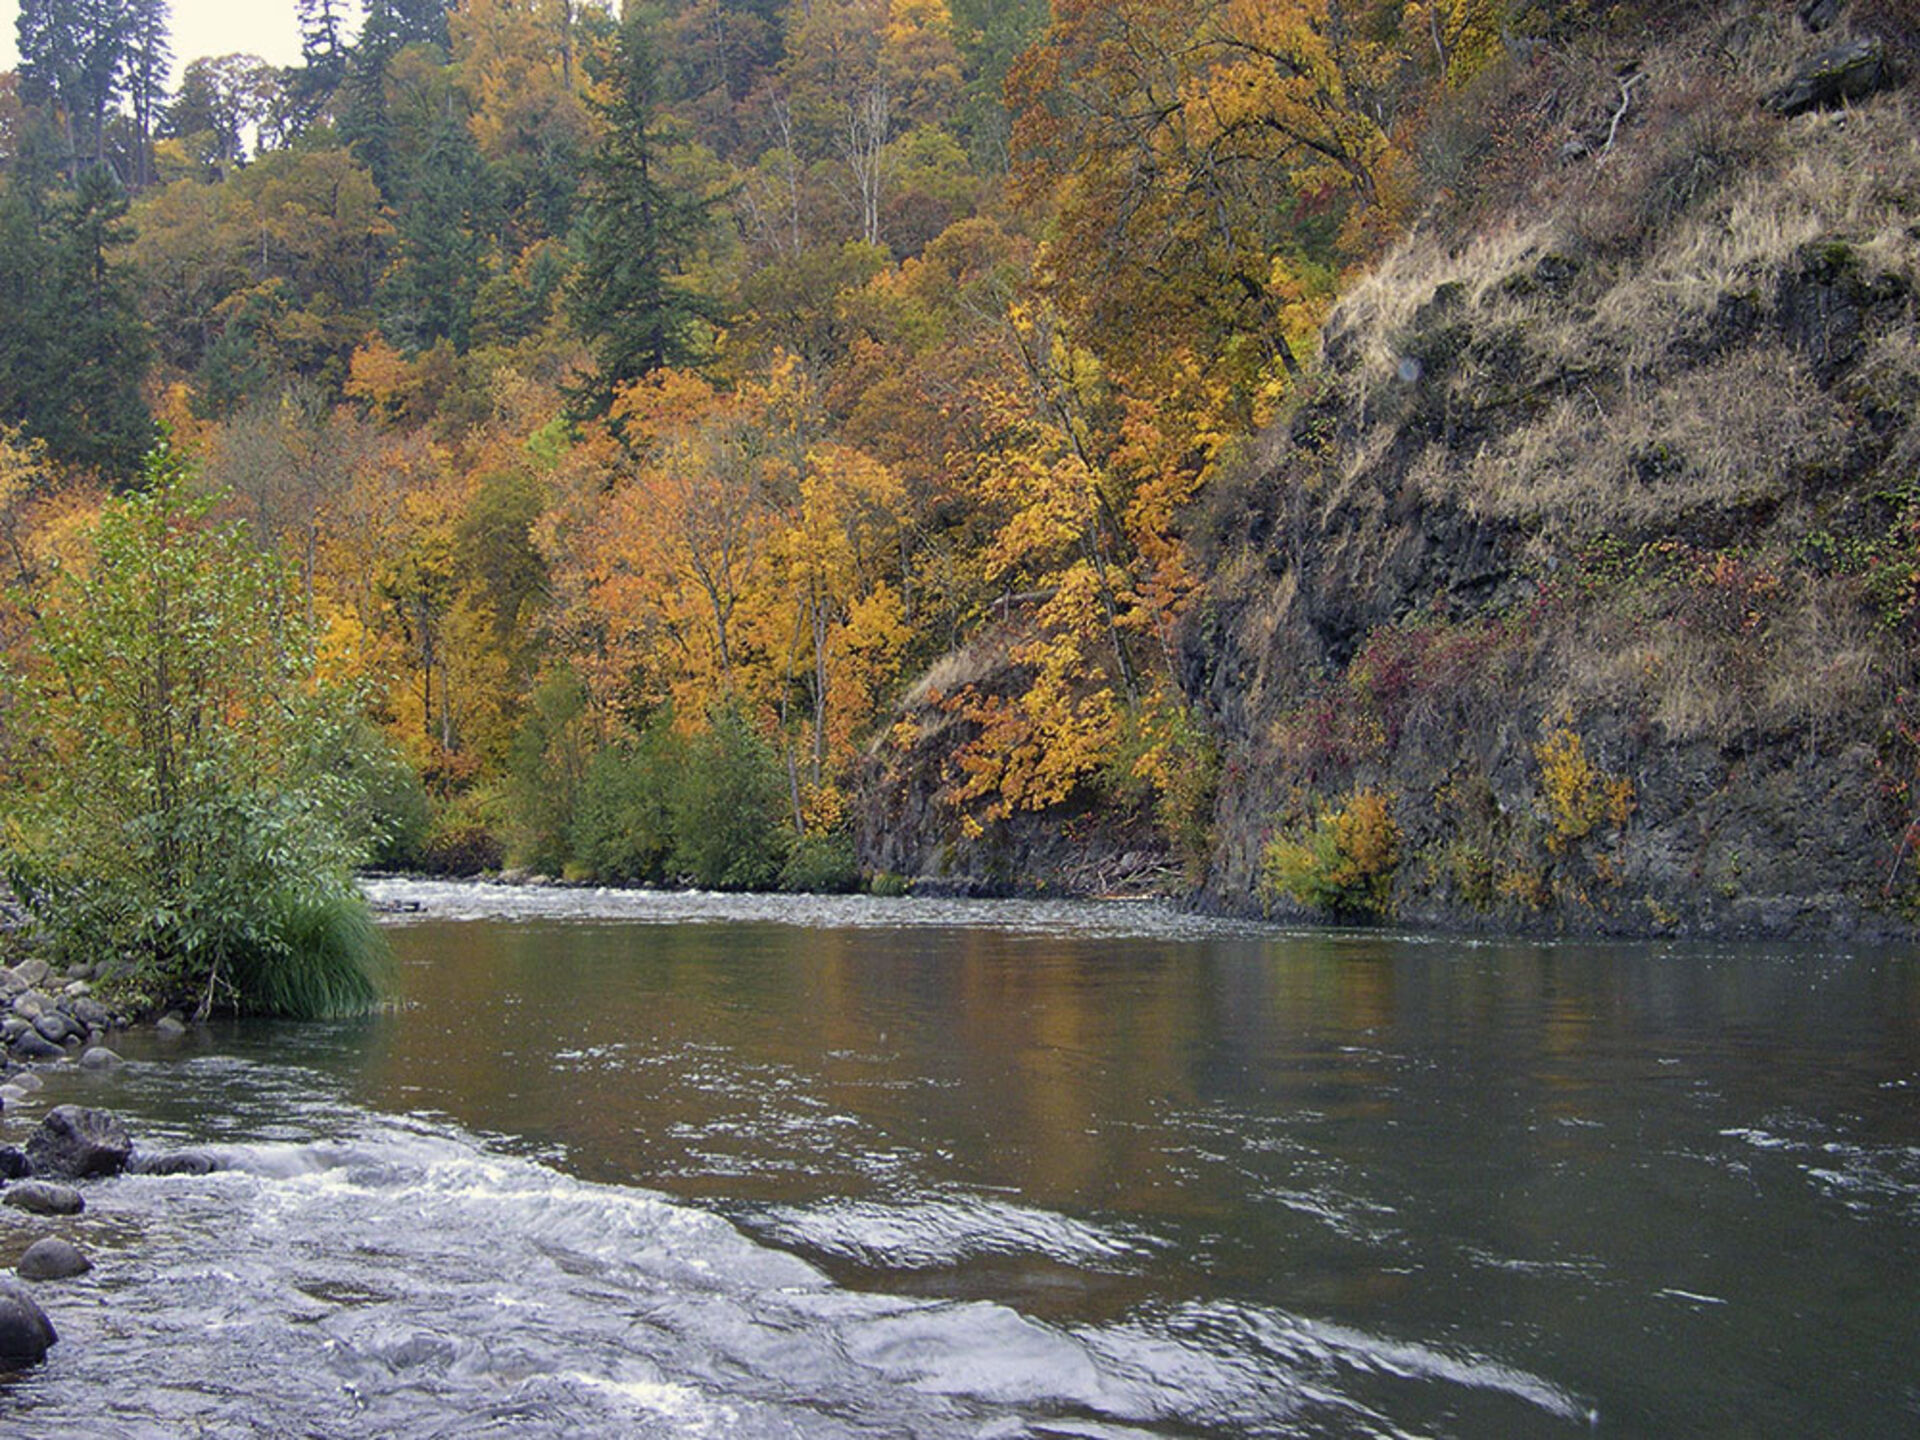  La Hood River, dans l'Oregon, aux États-Unis, est une rivière réputée pour ses truites arc-en-ciel.    